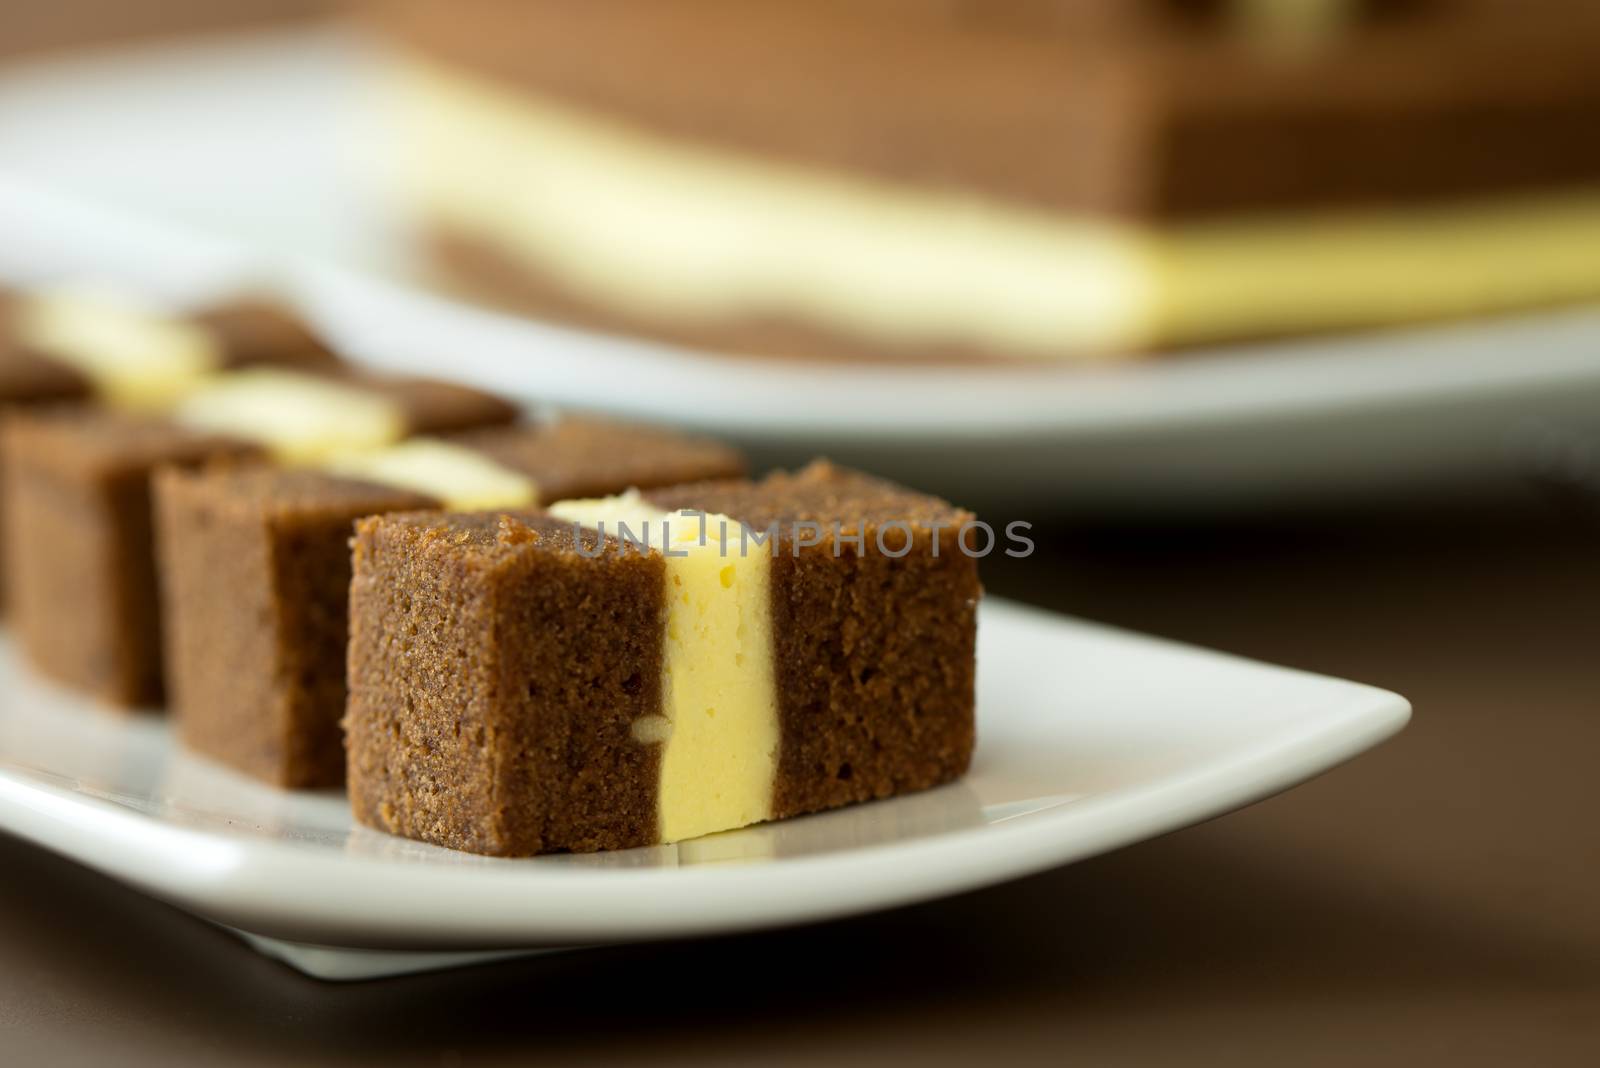 Sarawak famous dessert chocolate cheese layers cake